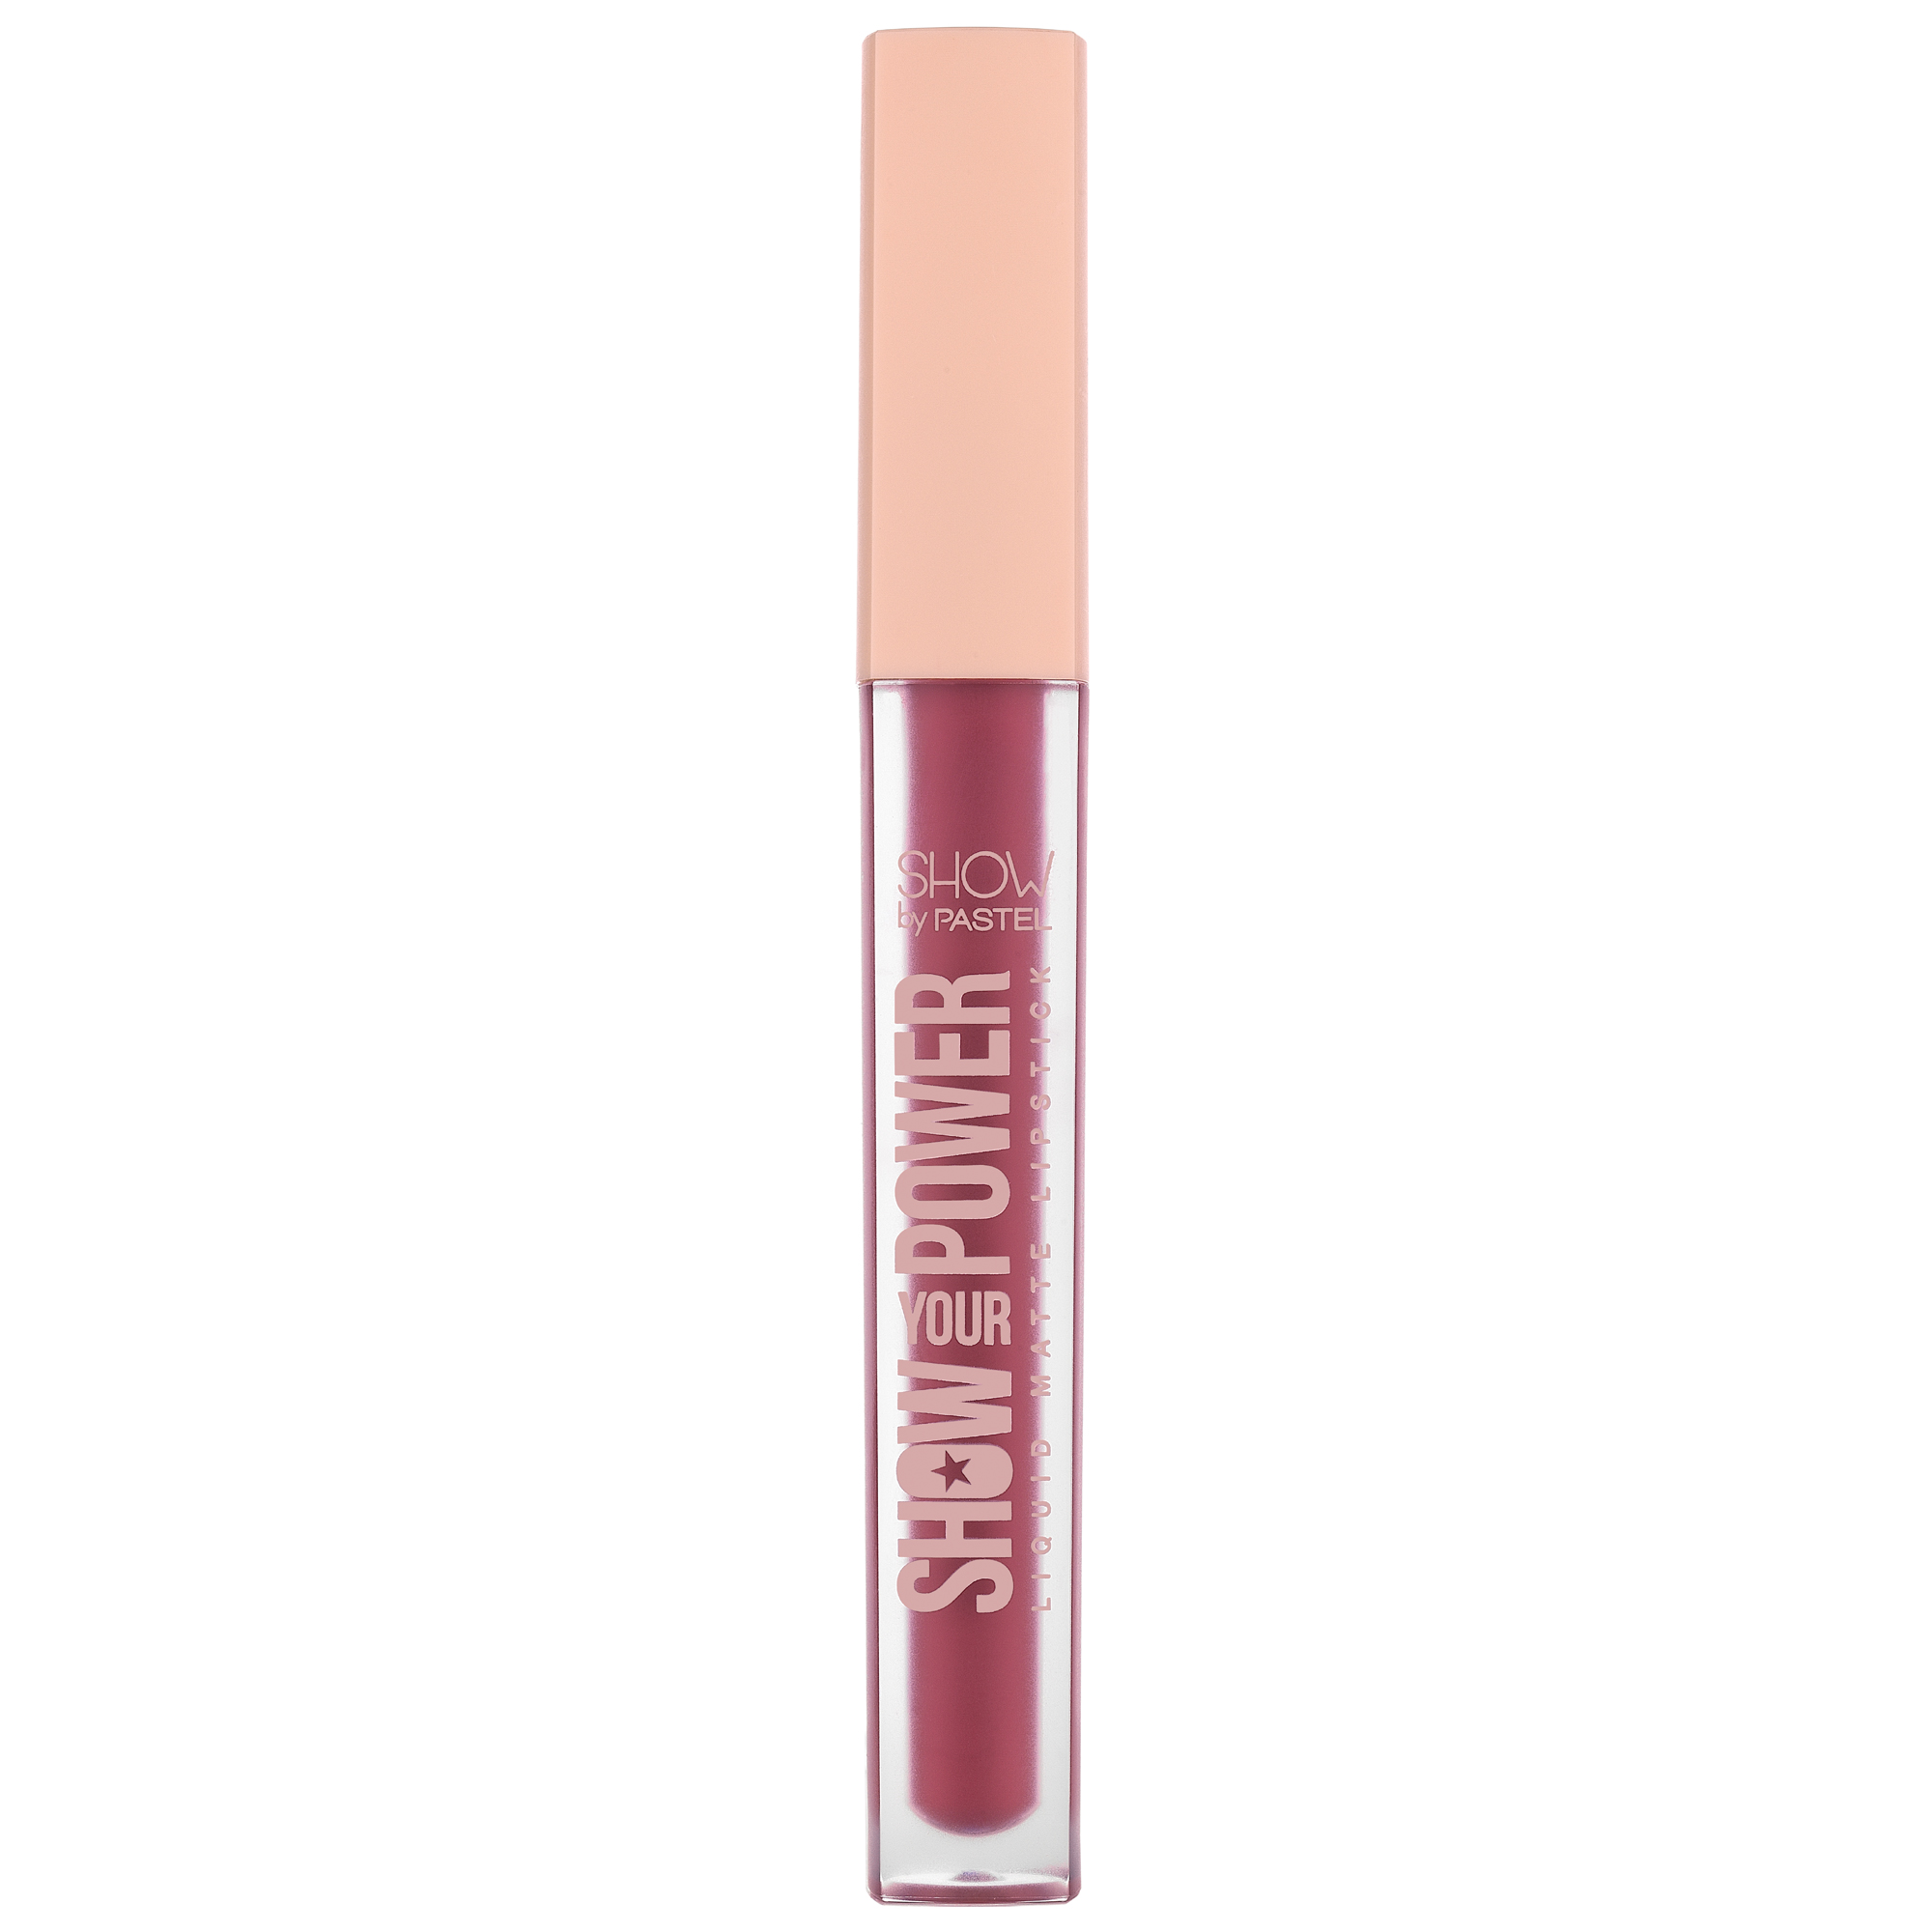 Pastel Show Your Power Liquid Matte Lipstick 606